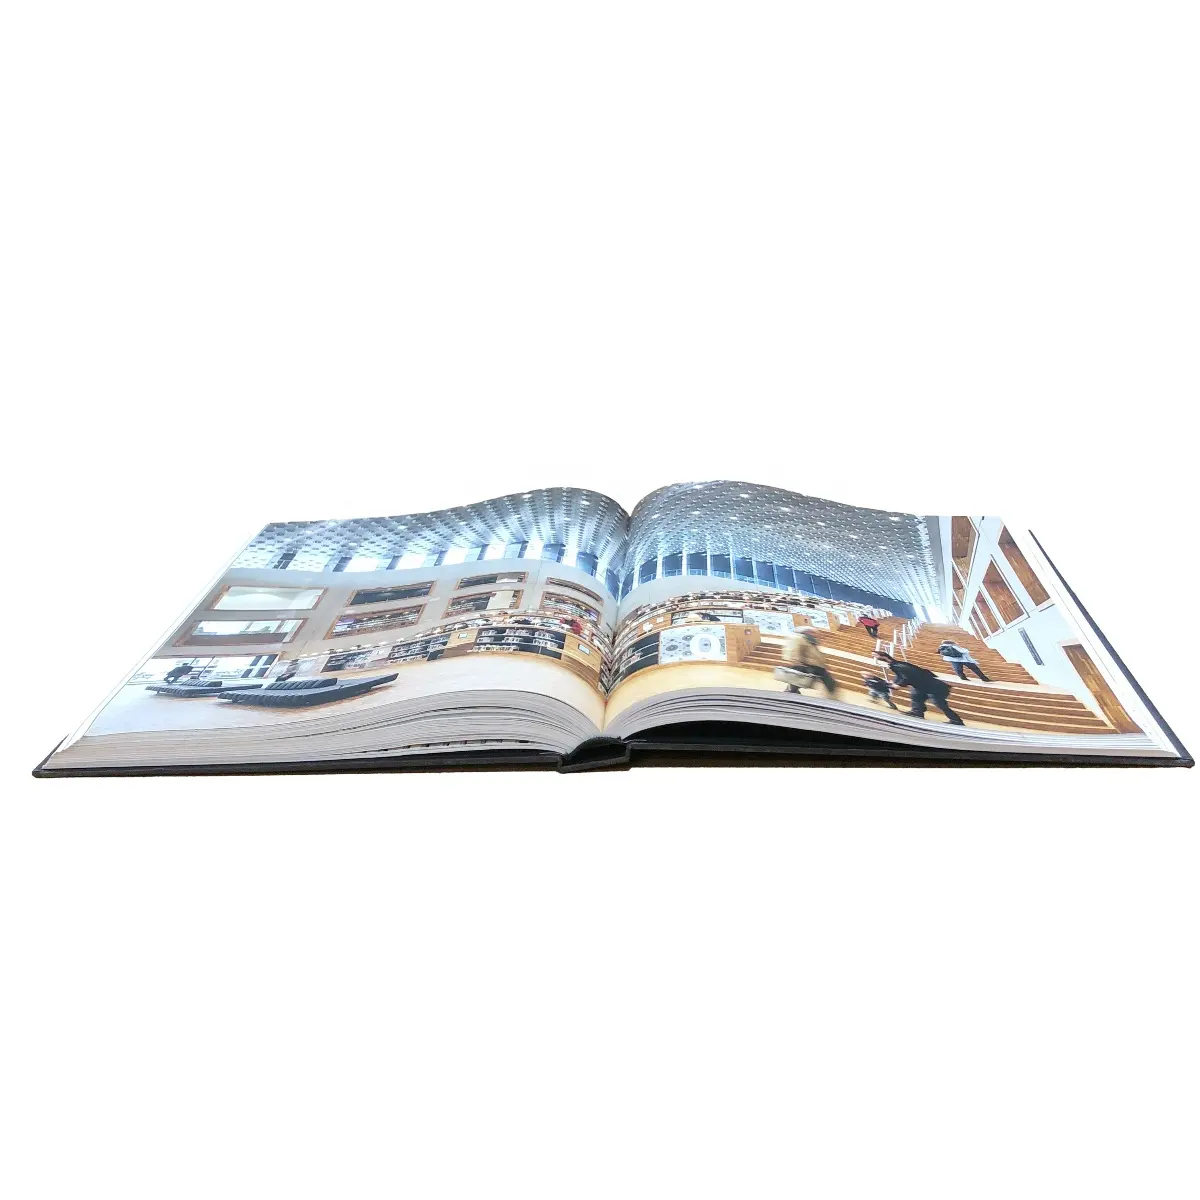 Print Boek A5/A4 Size Met Full Color Perfecte Kwaliteit Custom Hardcover Boeken Afdrukken